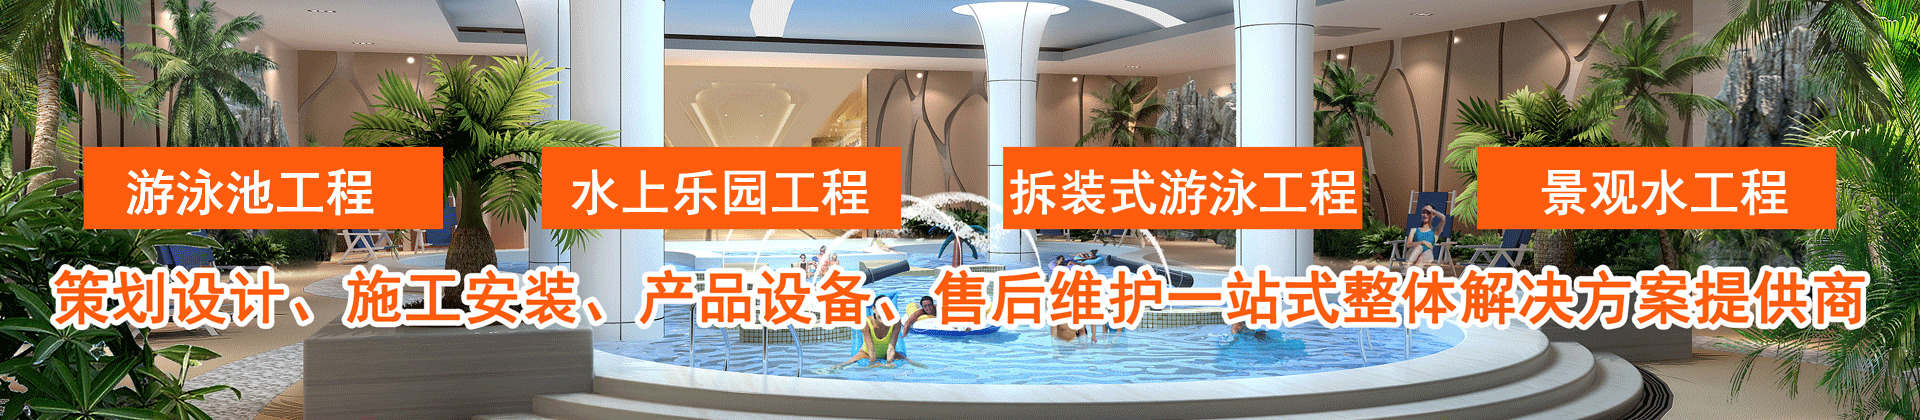 水处理设备专家-郑州ww177000包青天论坛版主泳池设备